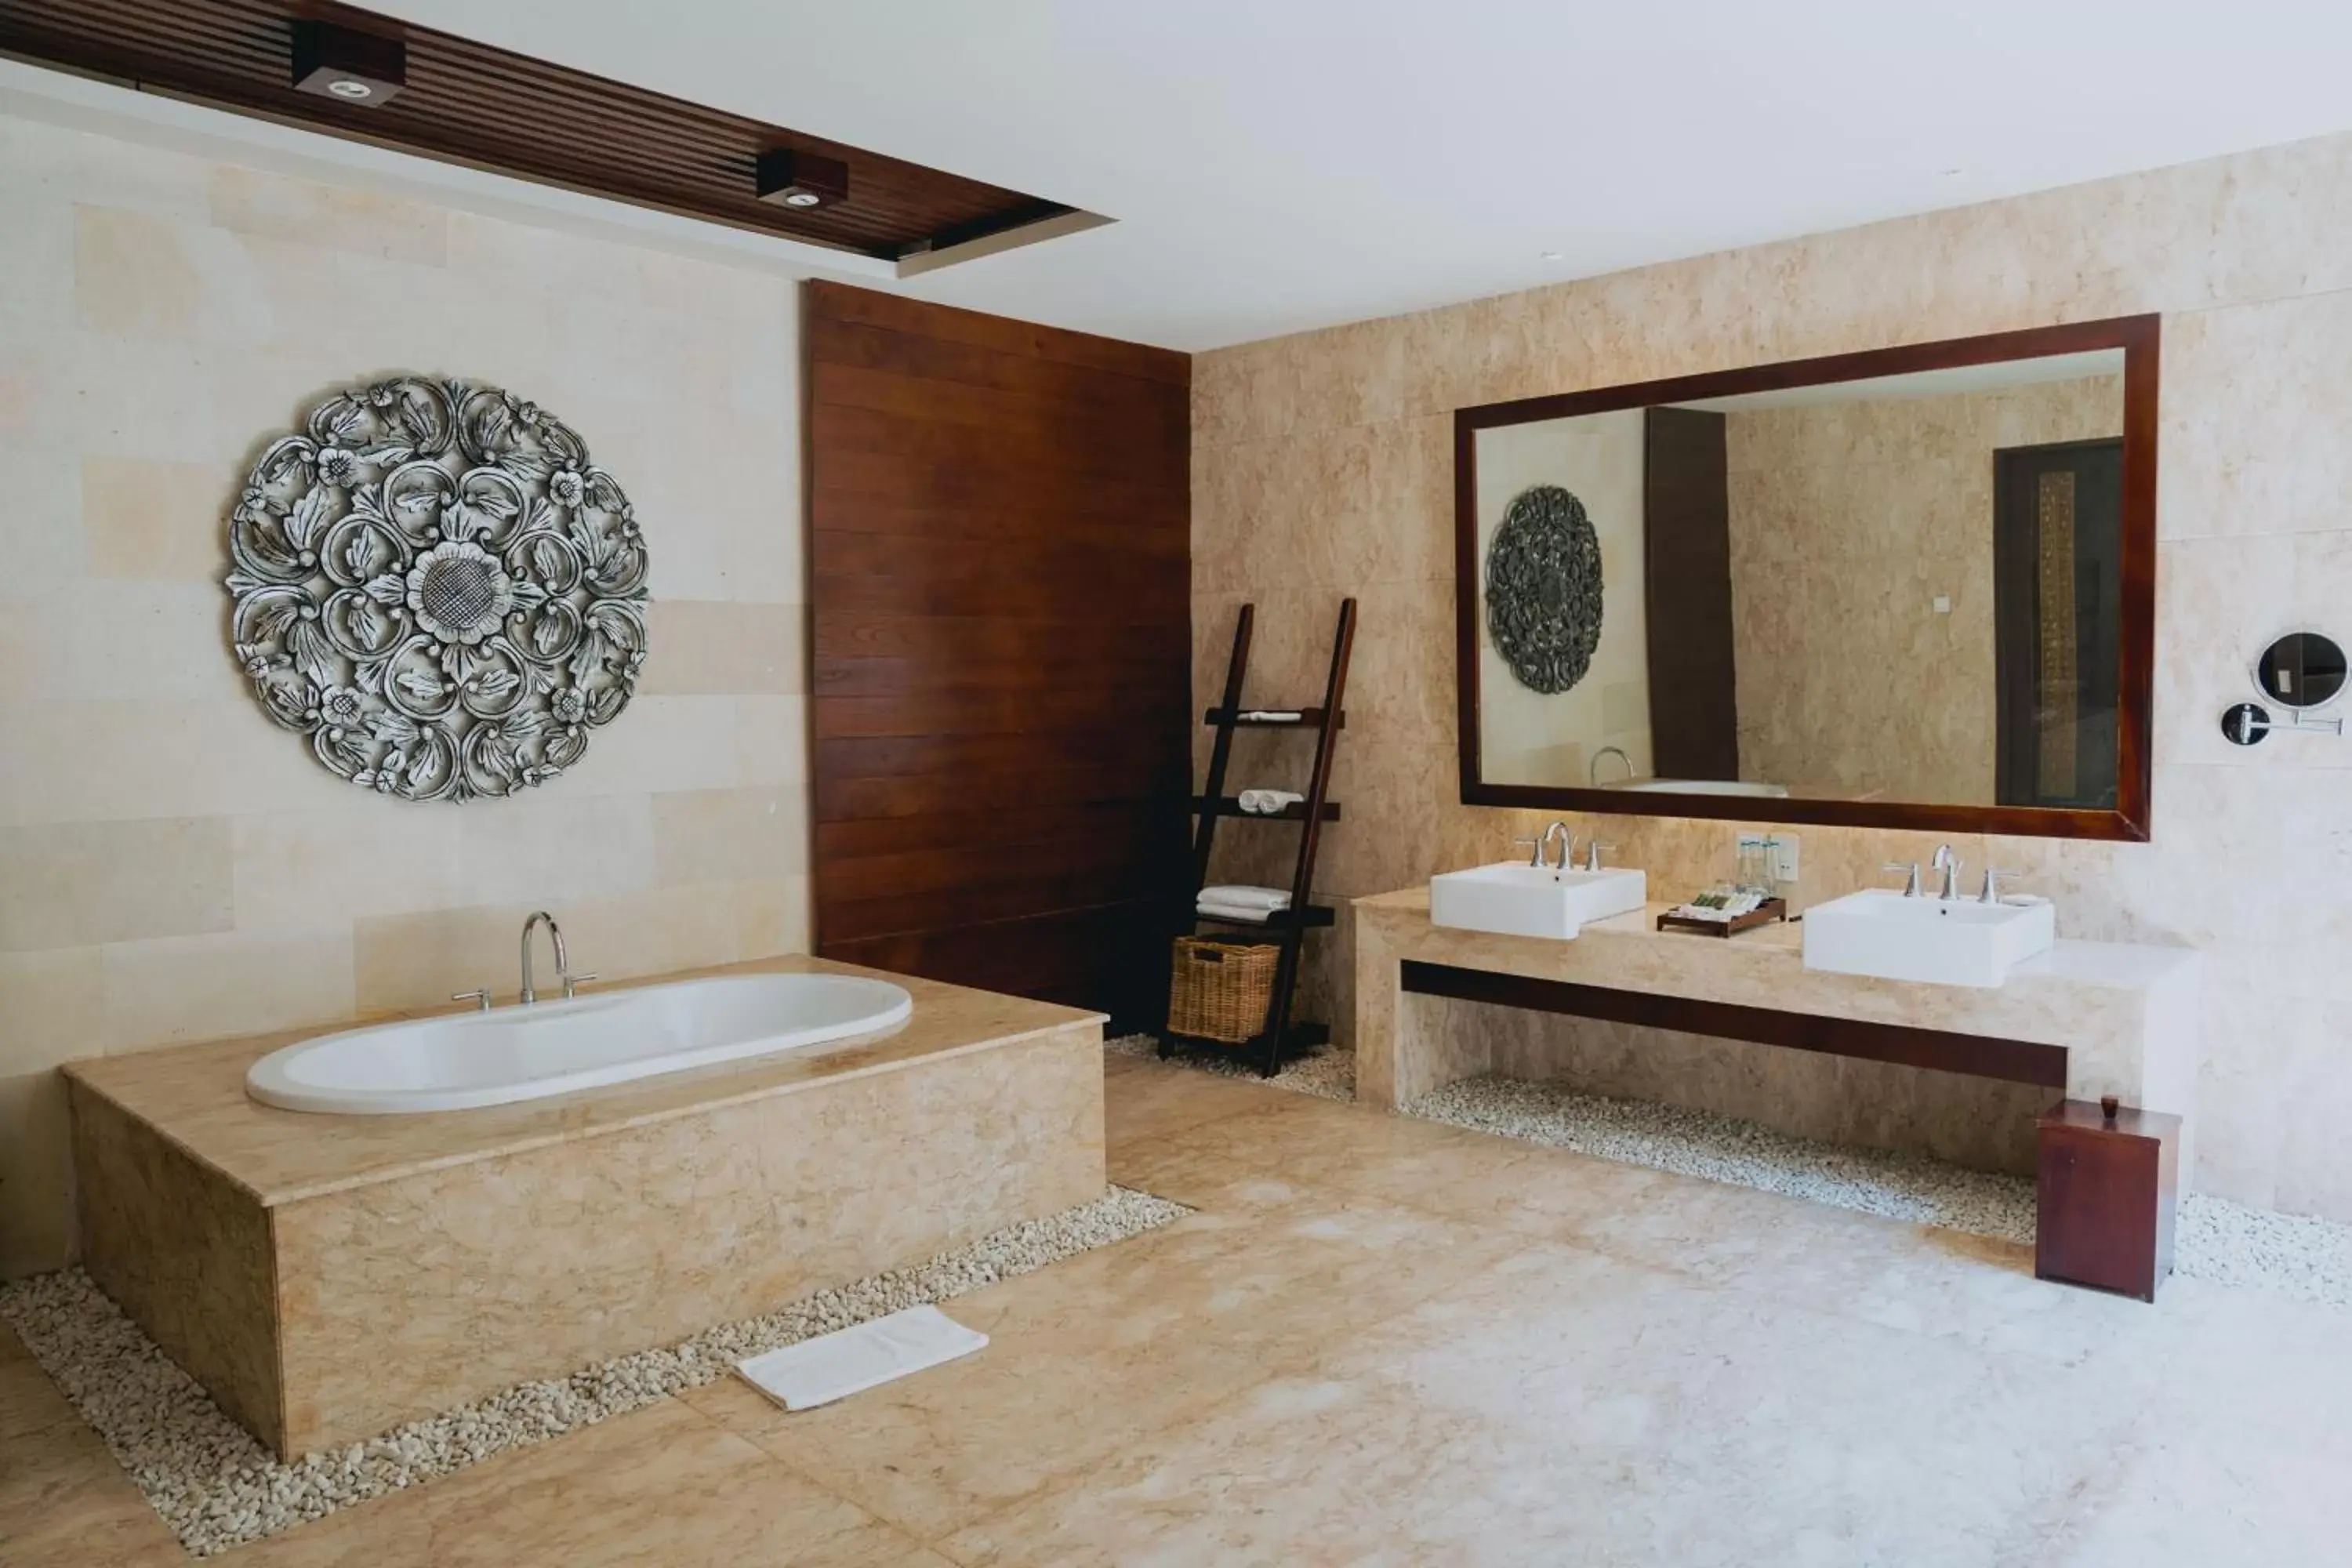 Bathroom in Ulu Segara Luxury Suites & Villas